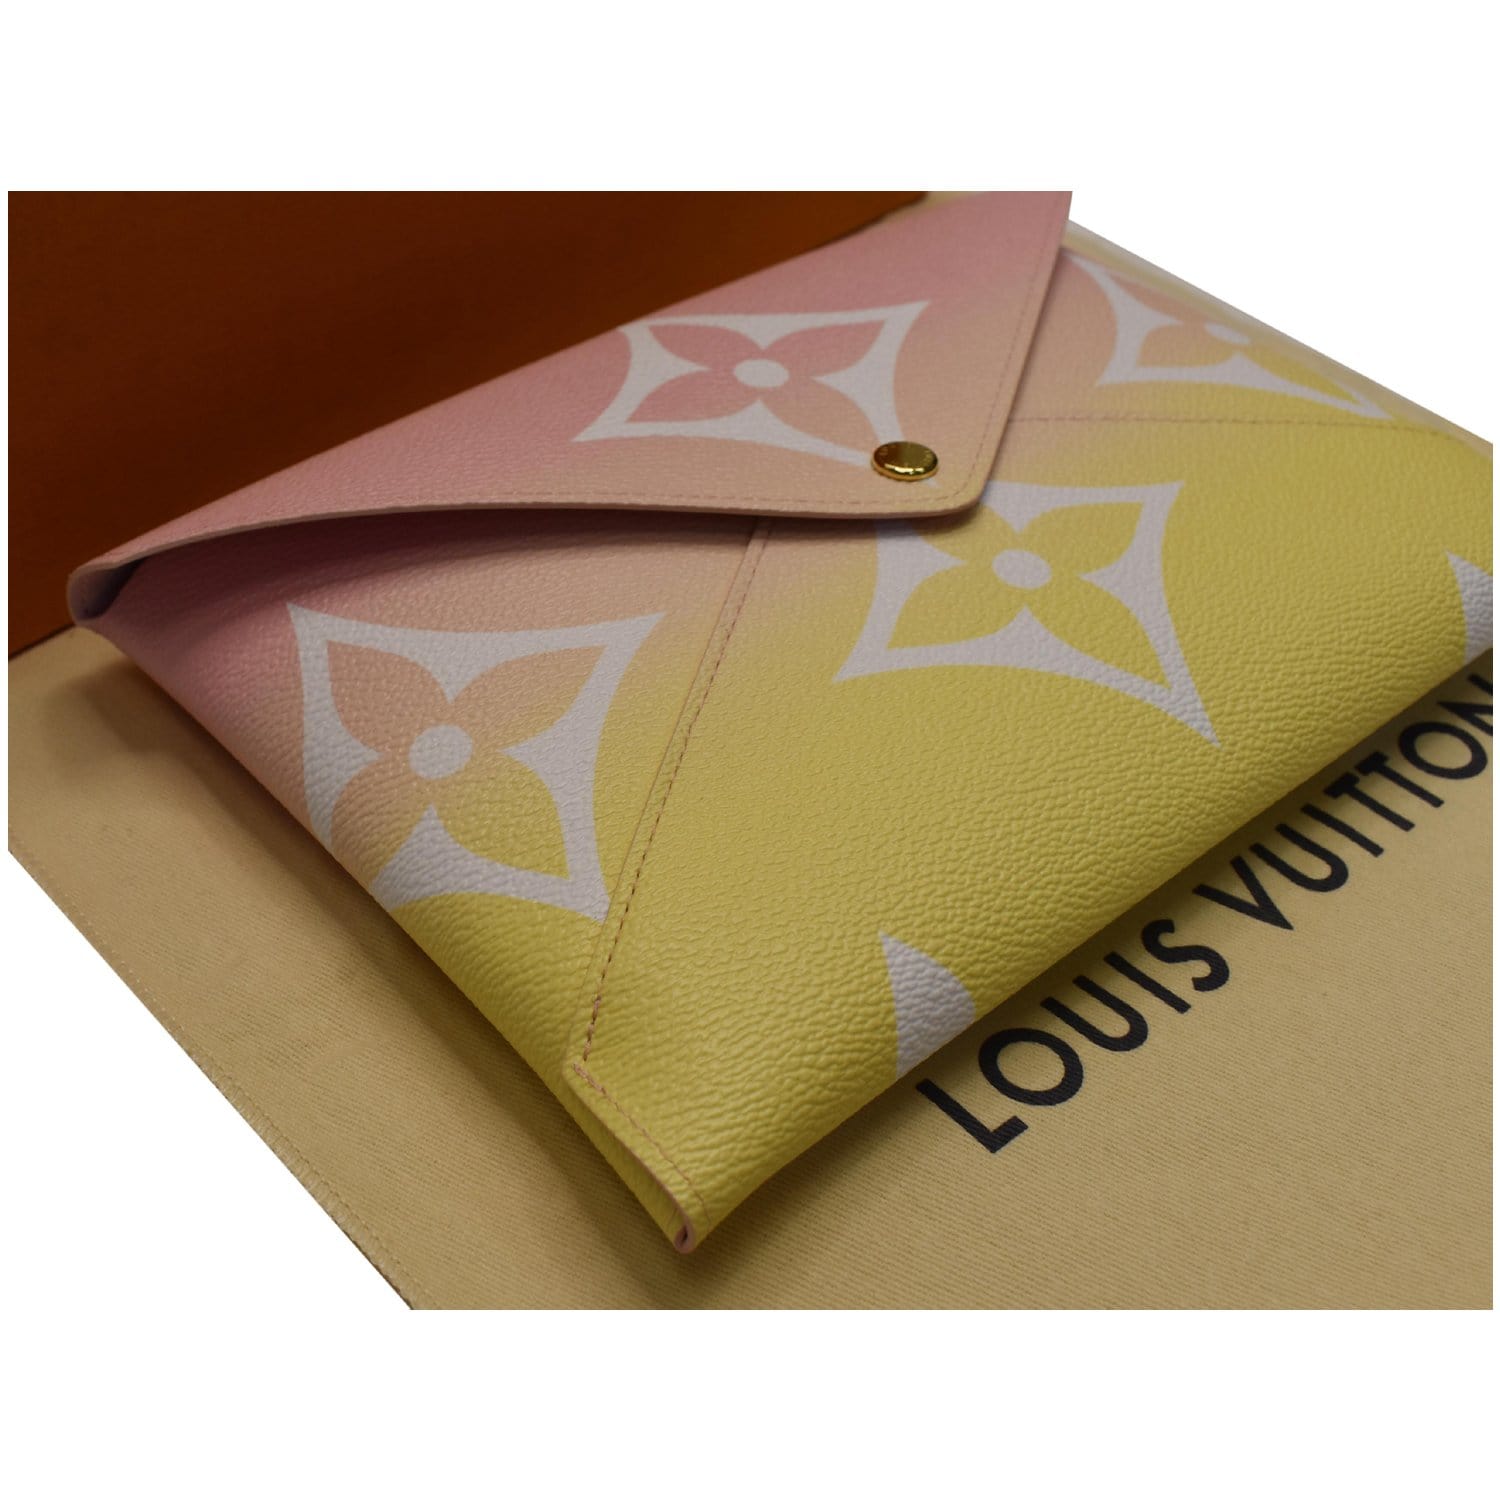 Louis Vuitton Large Pink X Yellow Monogram Kirigami Gm Envelop Pouch 19lvs421